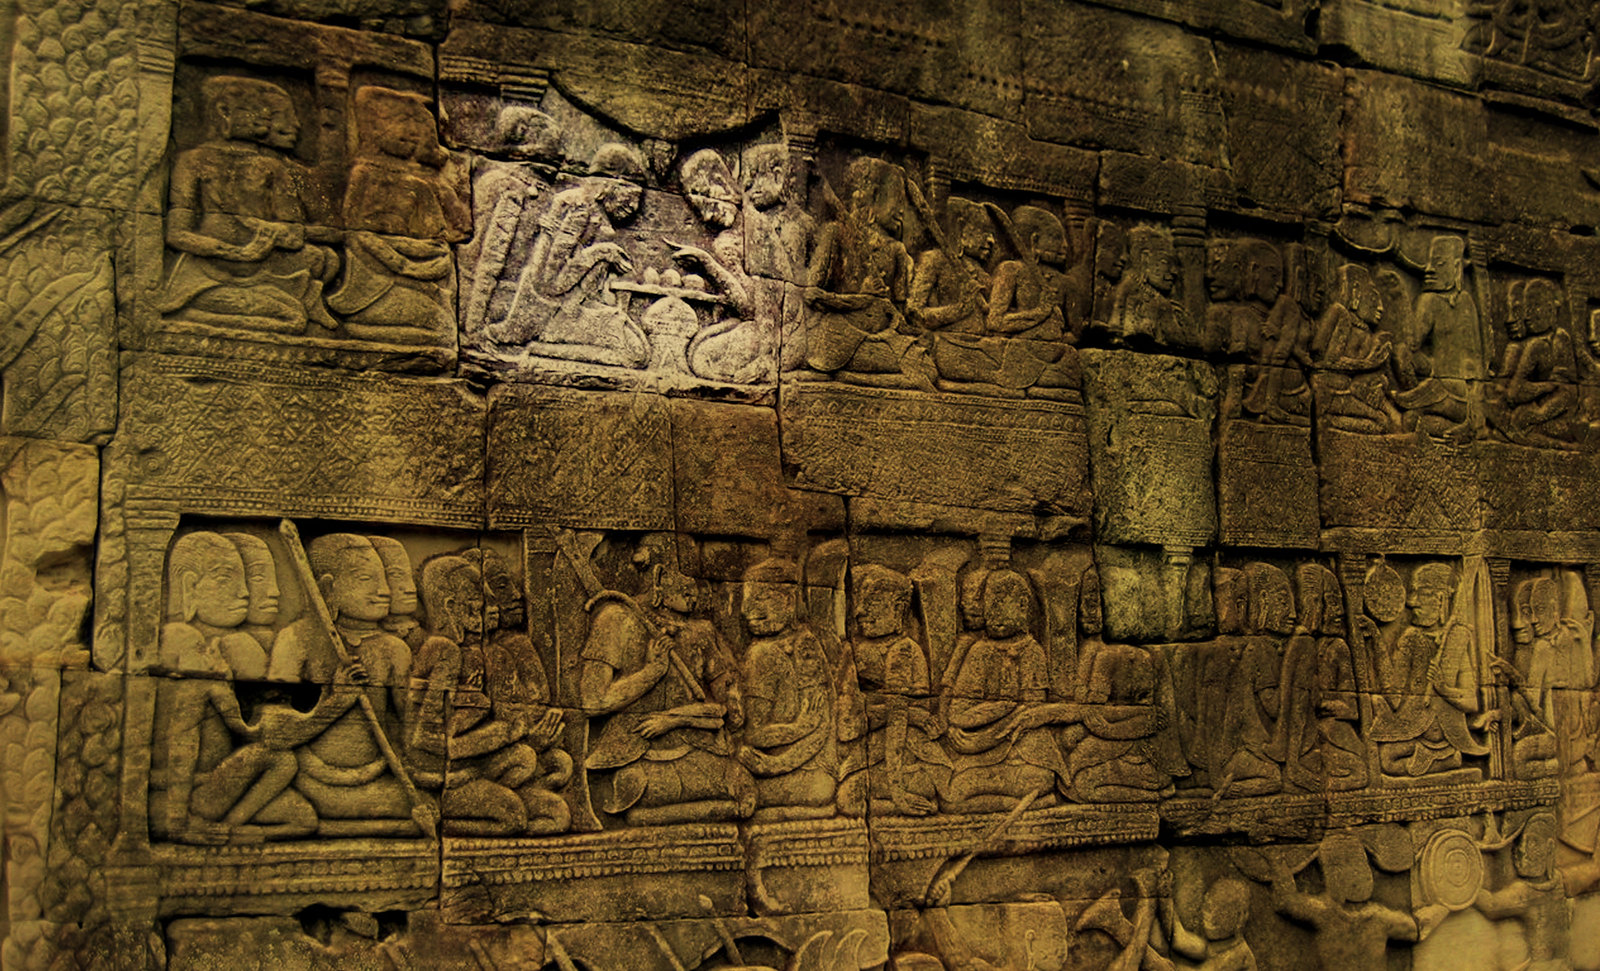 Chaturanga-makruk / Escenarios y artefactos de recreación meditativa en lndia y el sudeste asiático